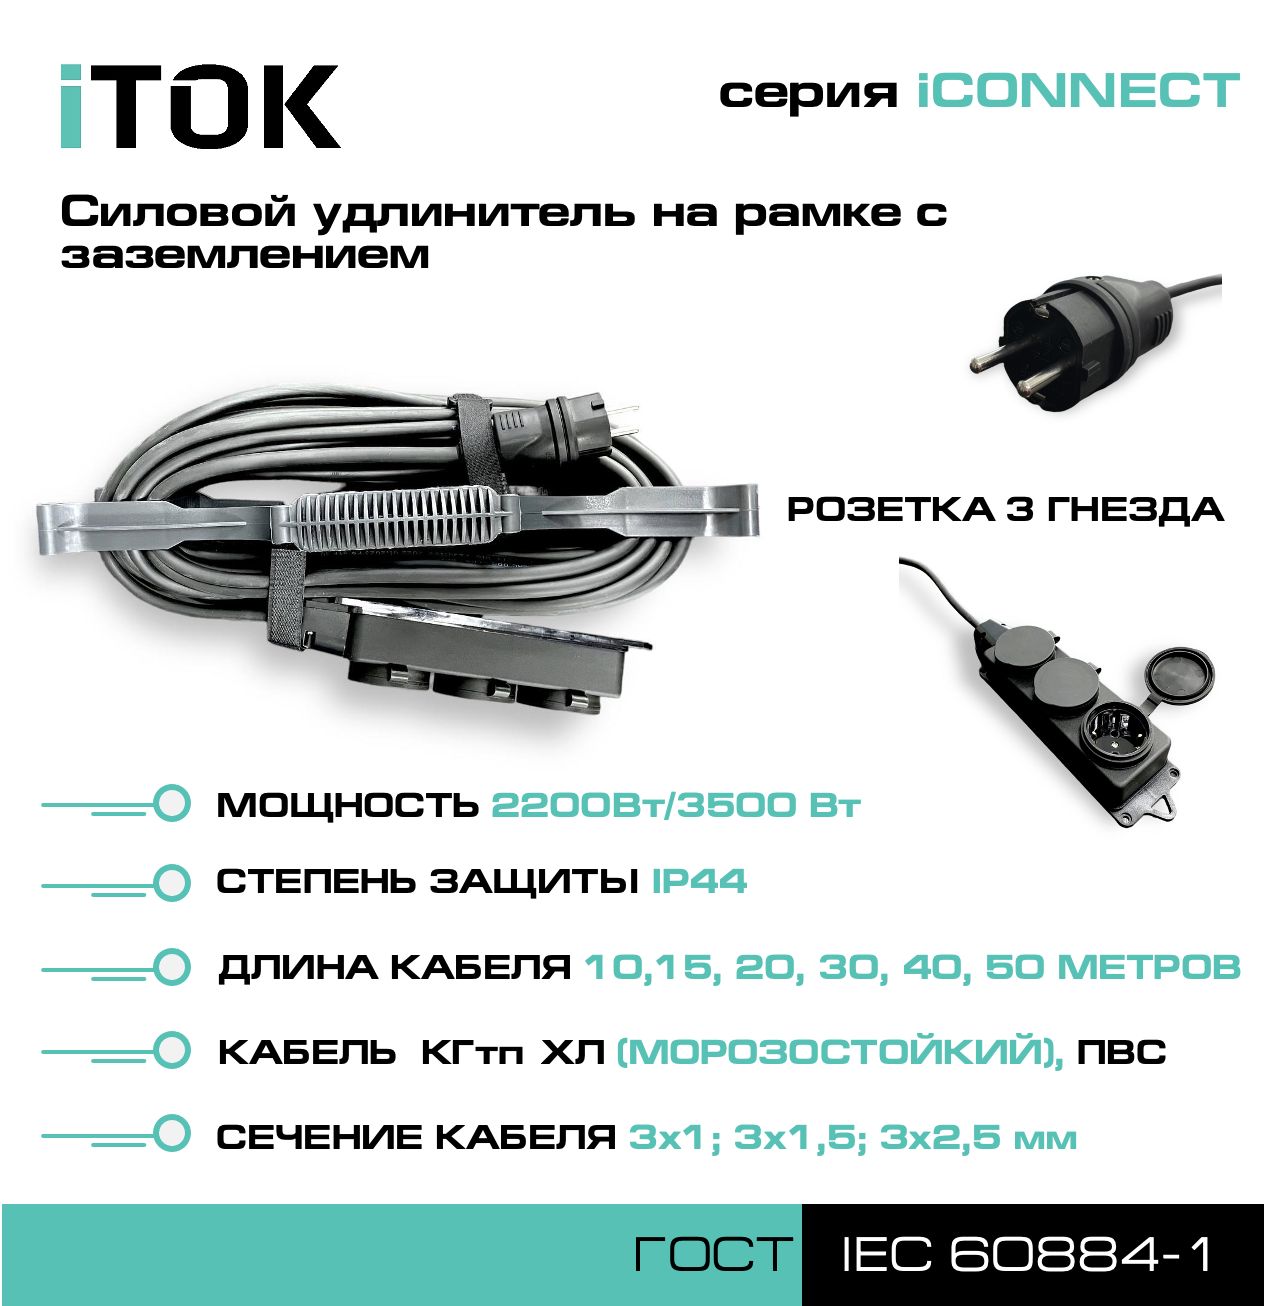 Удлинитель на рамке с заземлением серии iTOK iCONNECT ПВС 3х1 мм 3 гнезда IP44 15 м